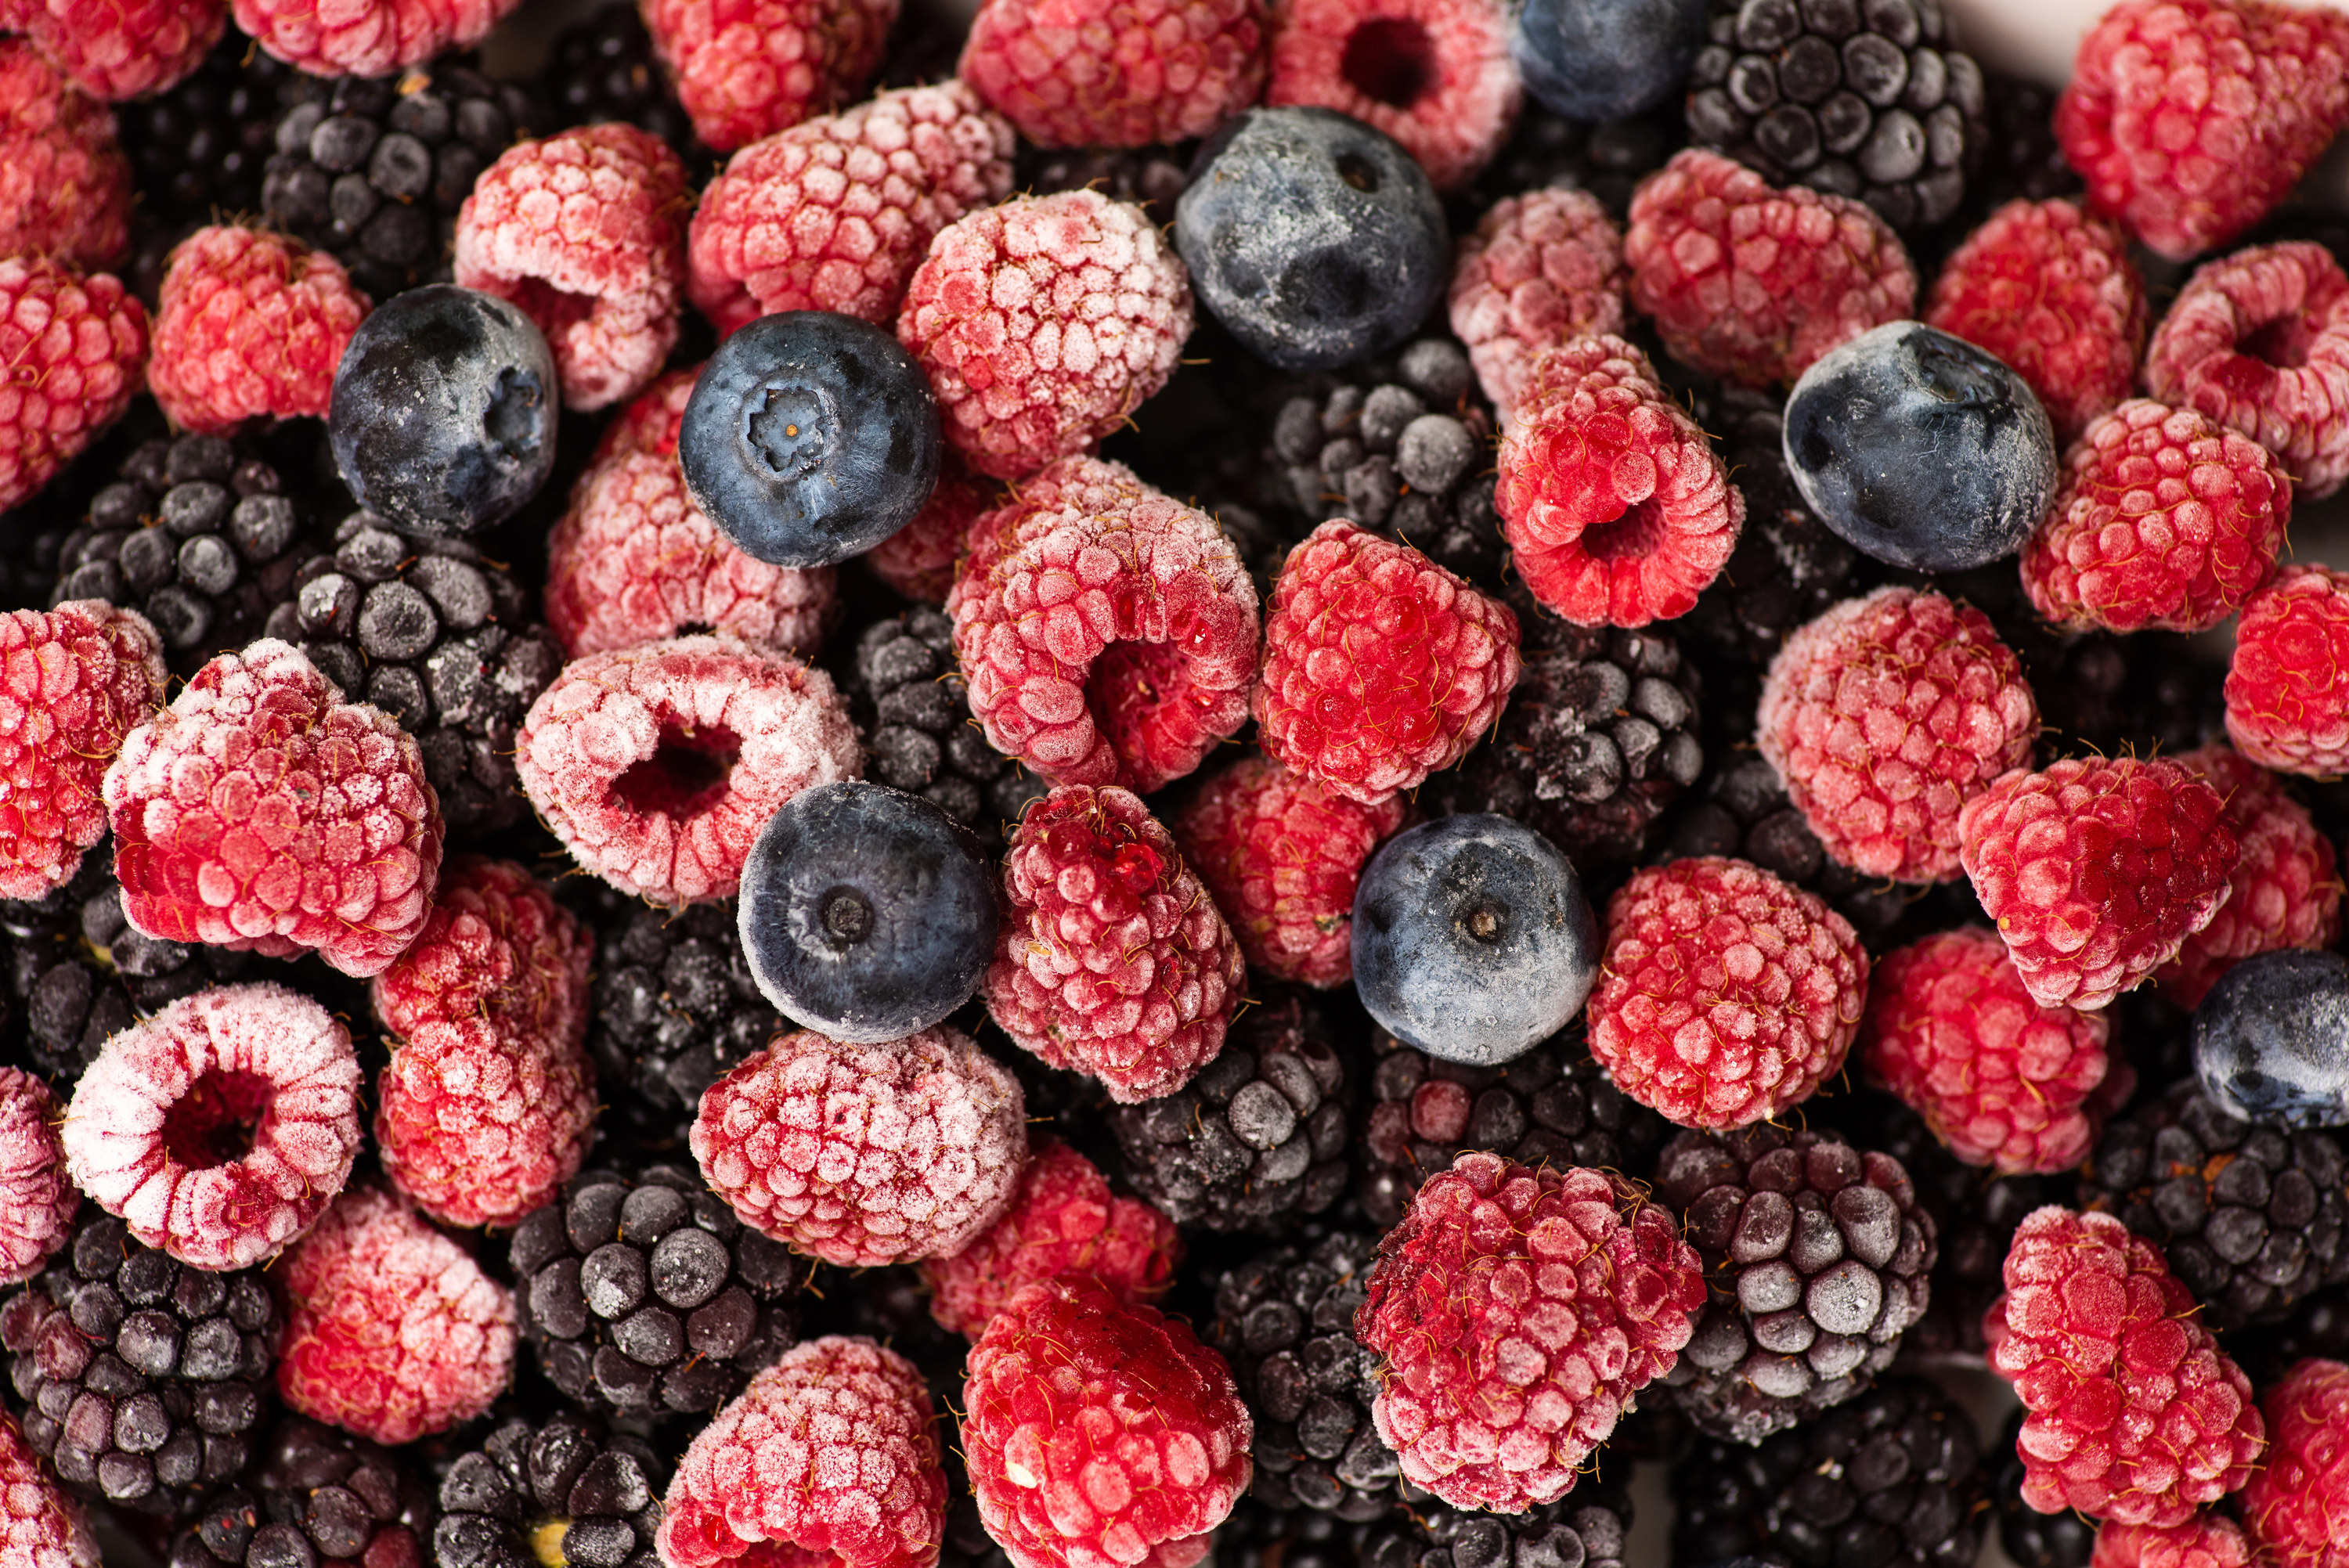 A bunch of frozen berries, including raspberries, blackberries and blueberries 